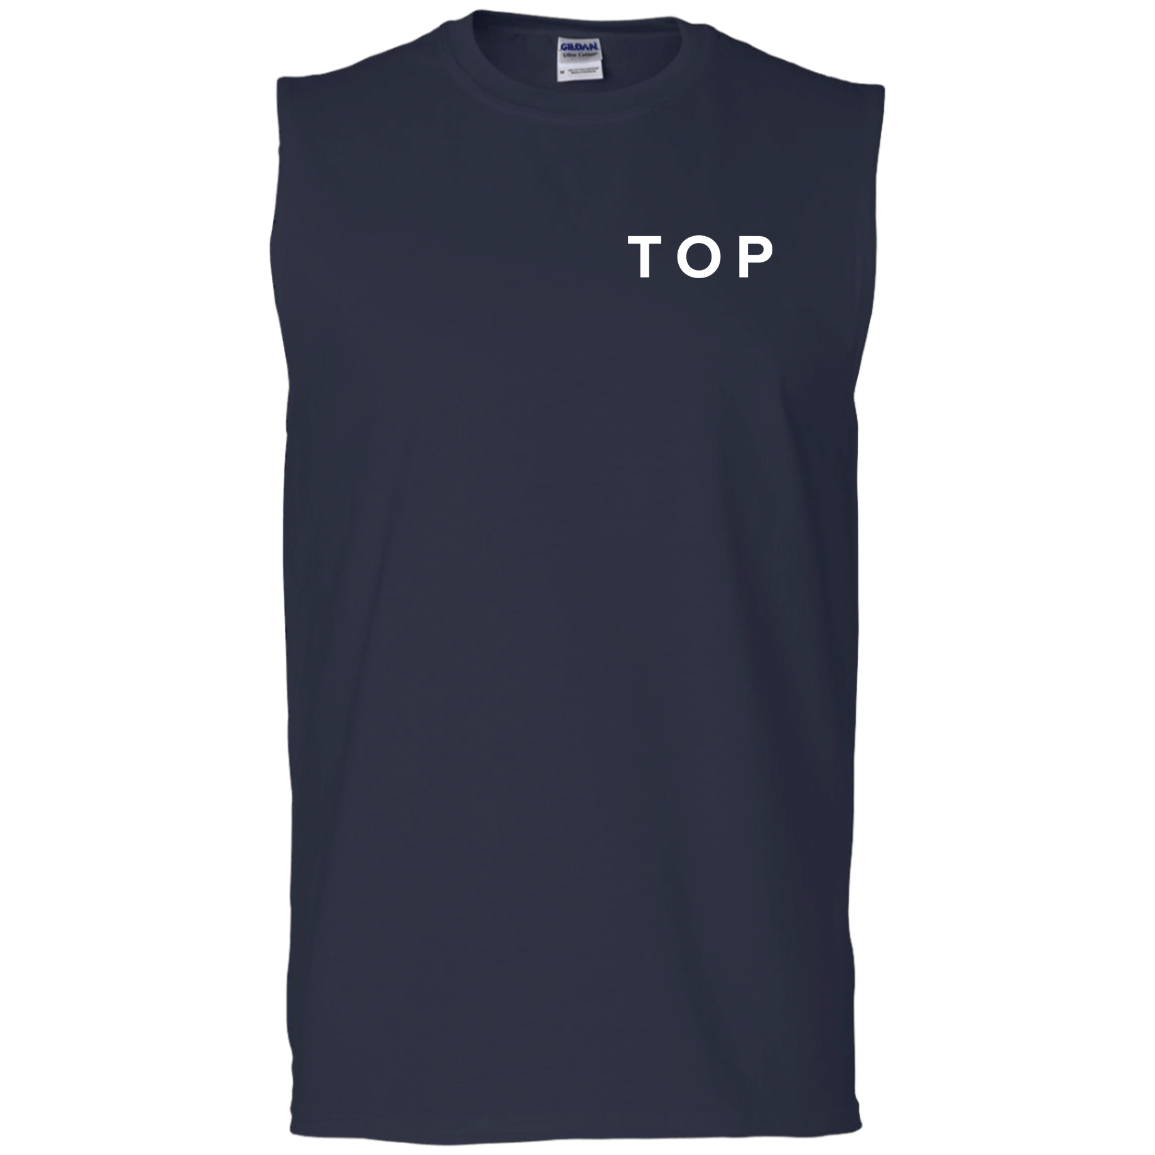 TOP T-Shirt